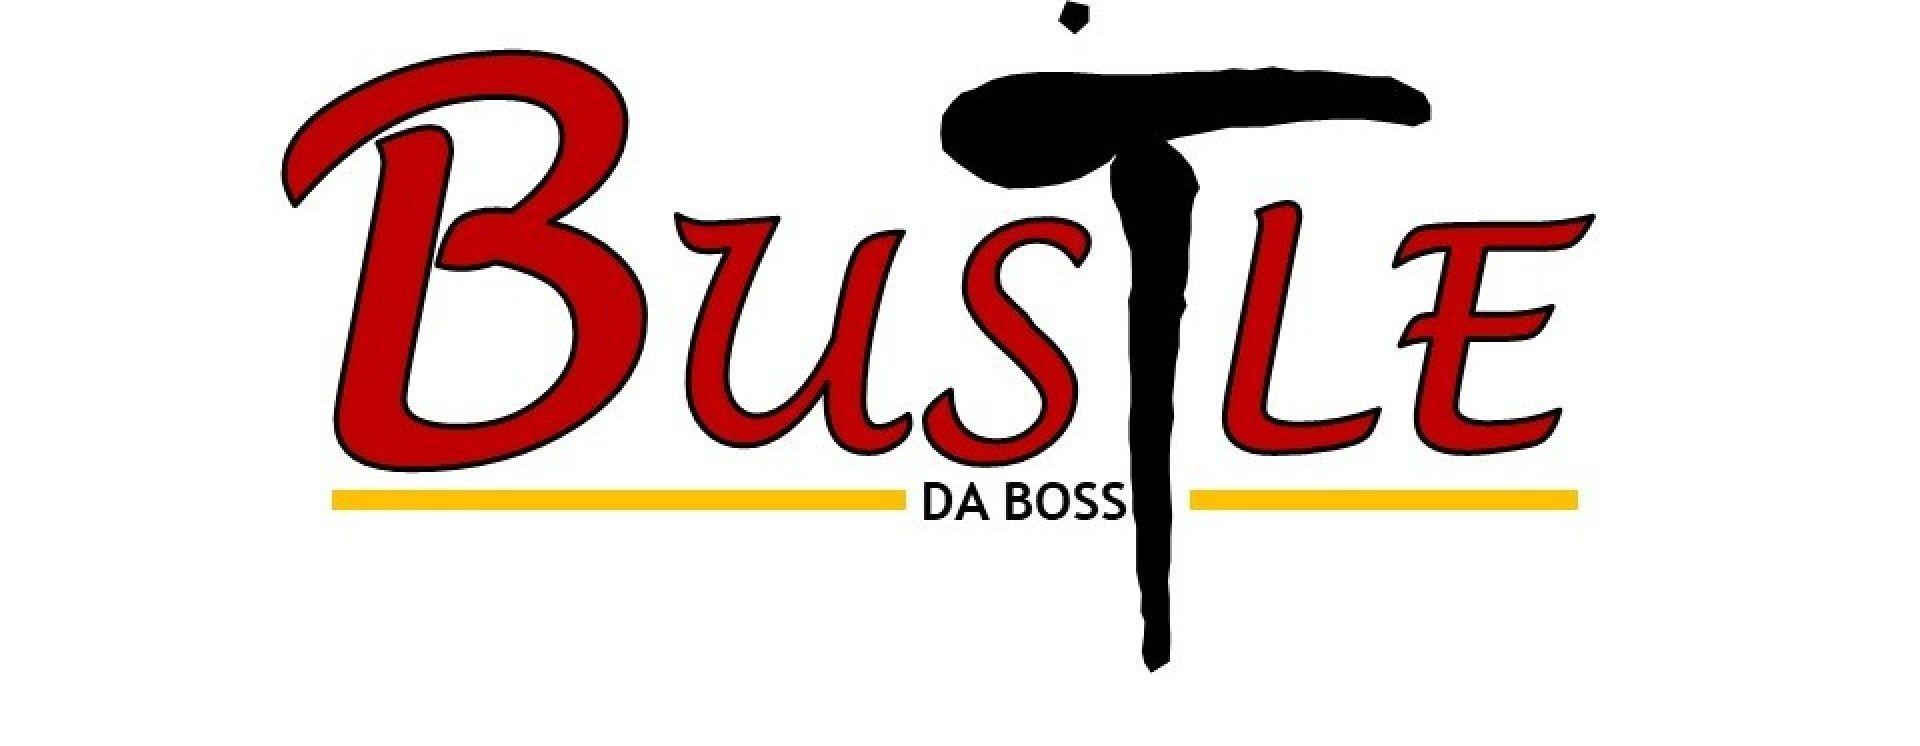 Bustle Logo - Keorata kesa fetse (Prod. by Bustle T) by Bustle T | ReverbNation